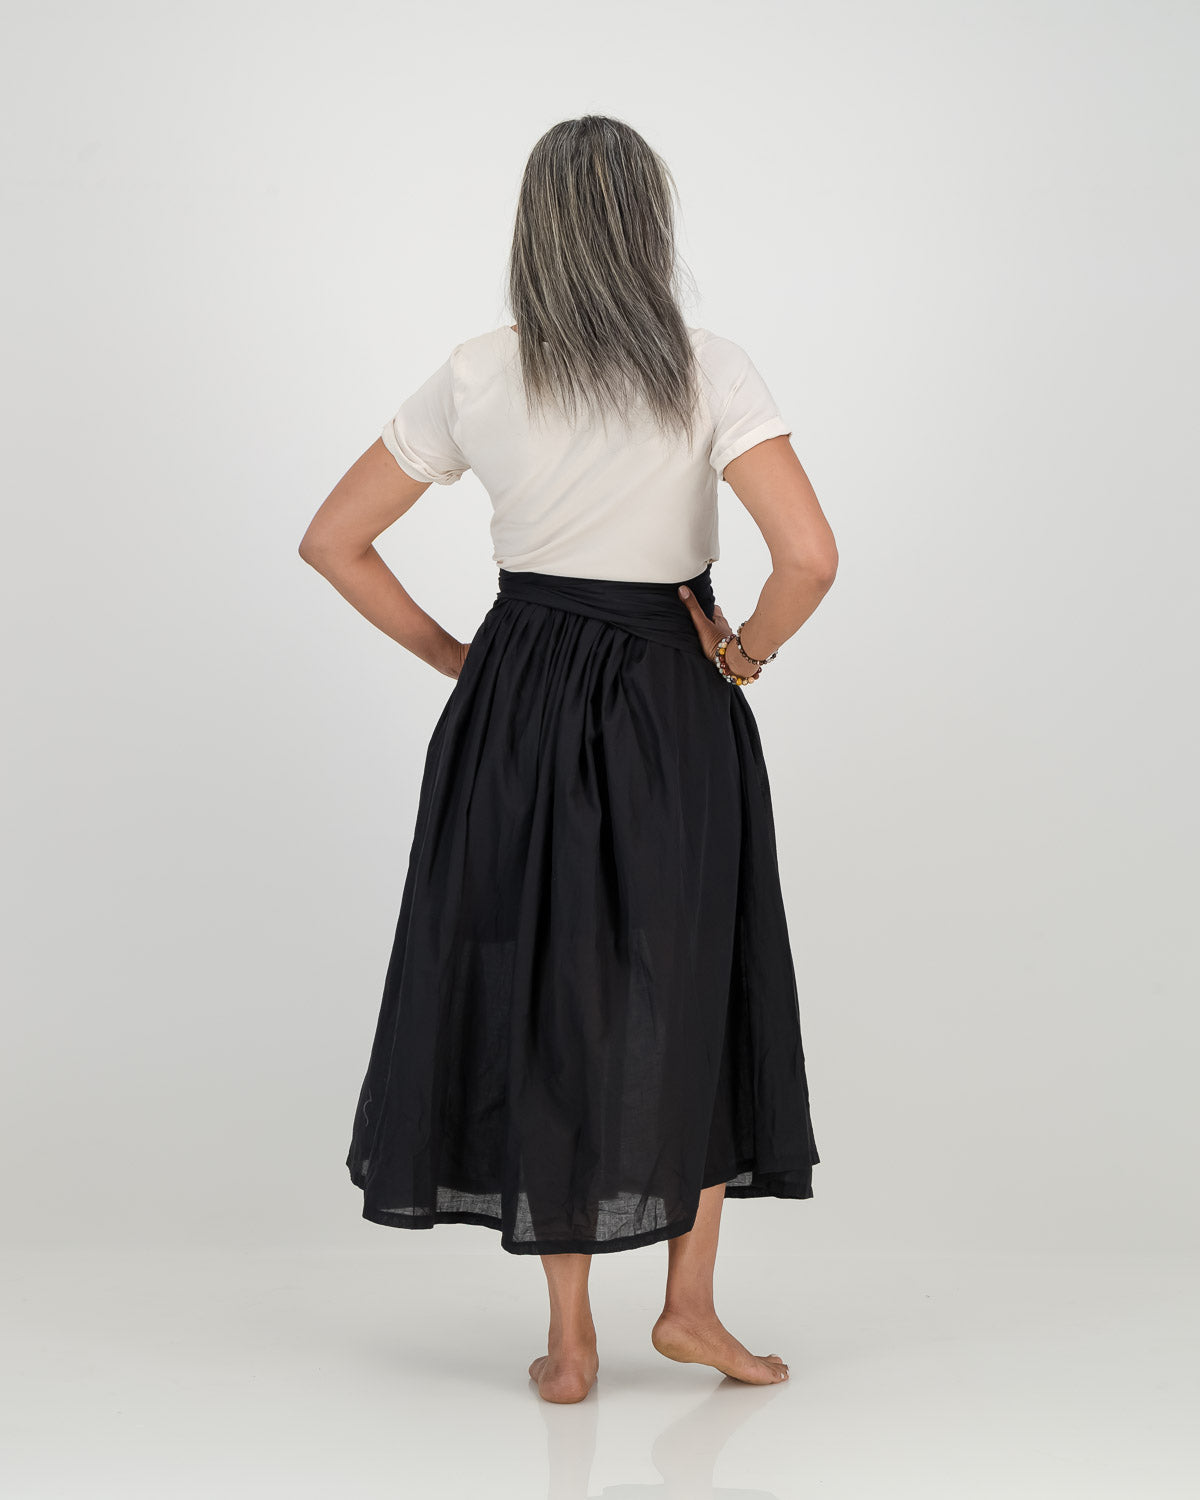 lisa skirt - ankle length